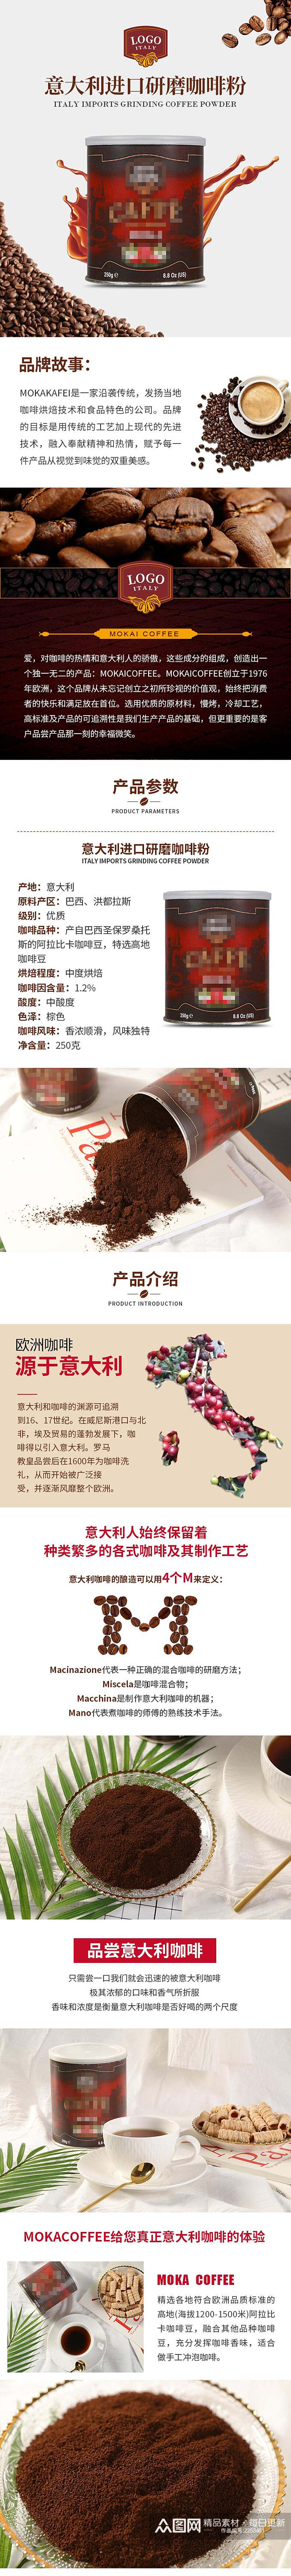 意大利进口研磨咖啡粉电商详情页素材